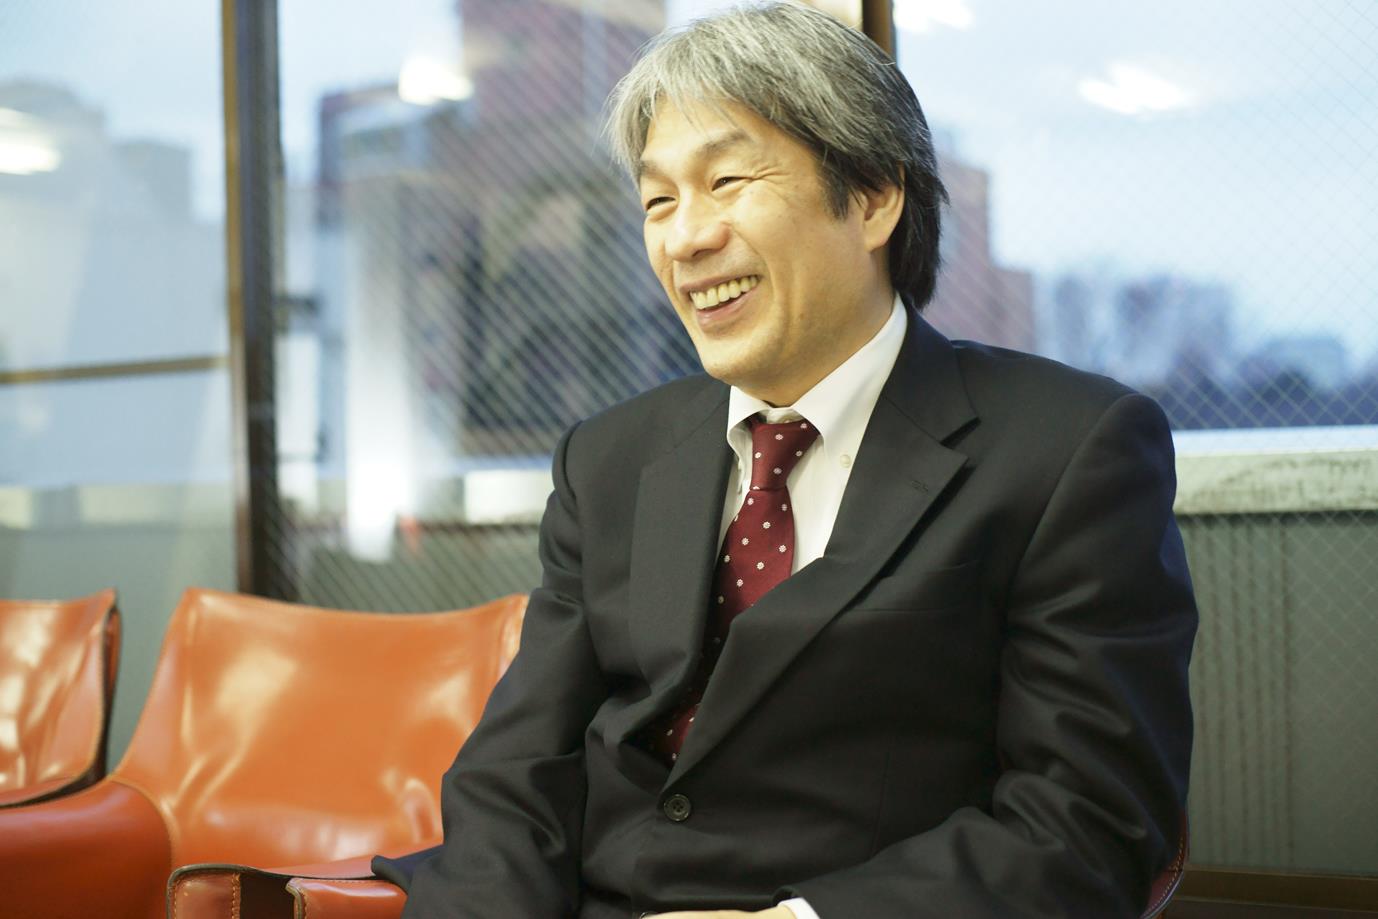 笑顔でインタビューに応えるスーツ姿の野澤和弘さんの写真